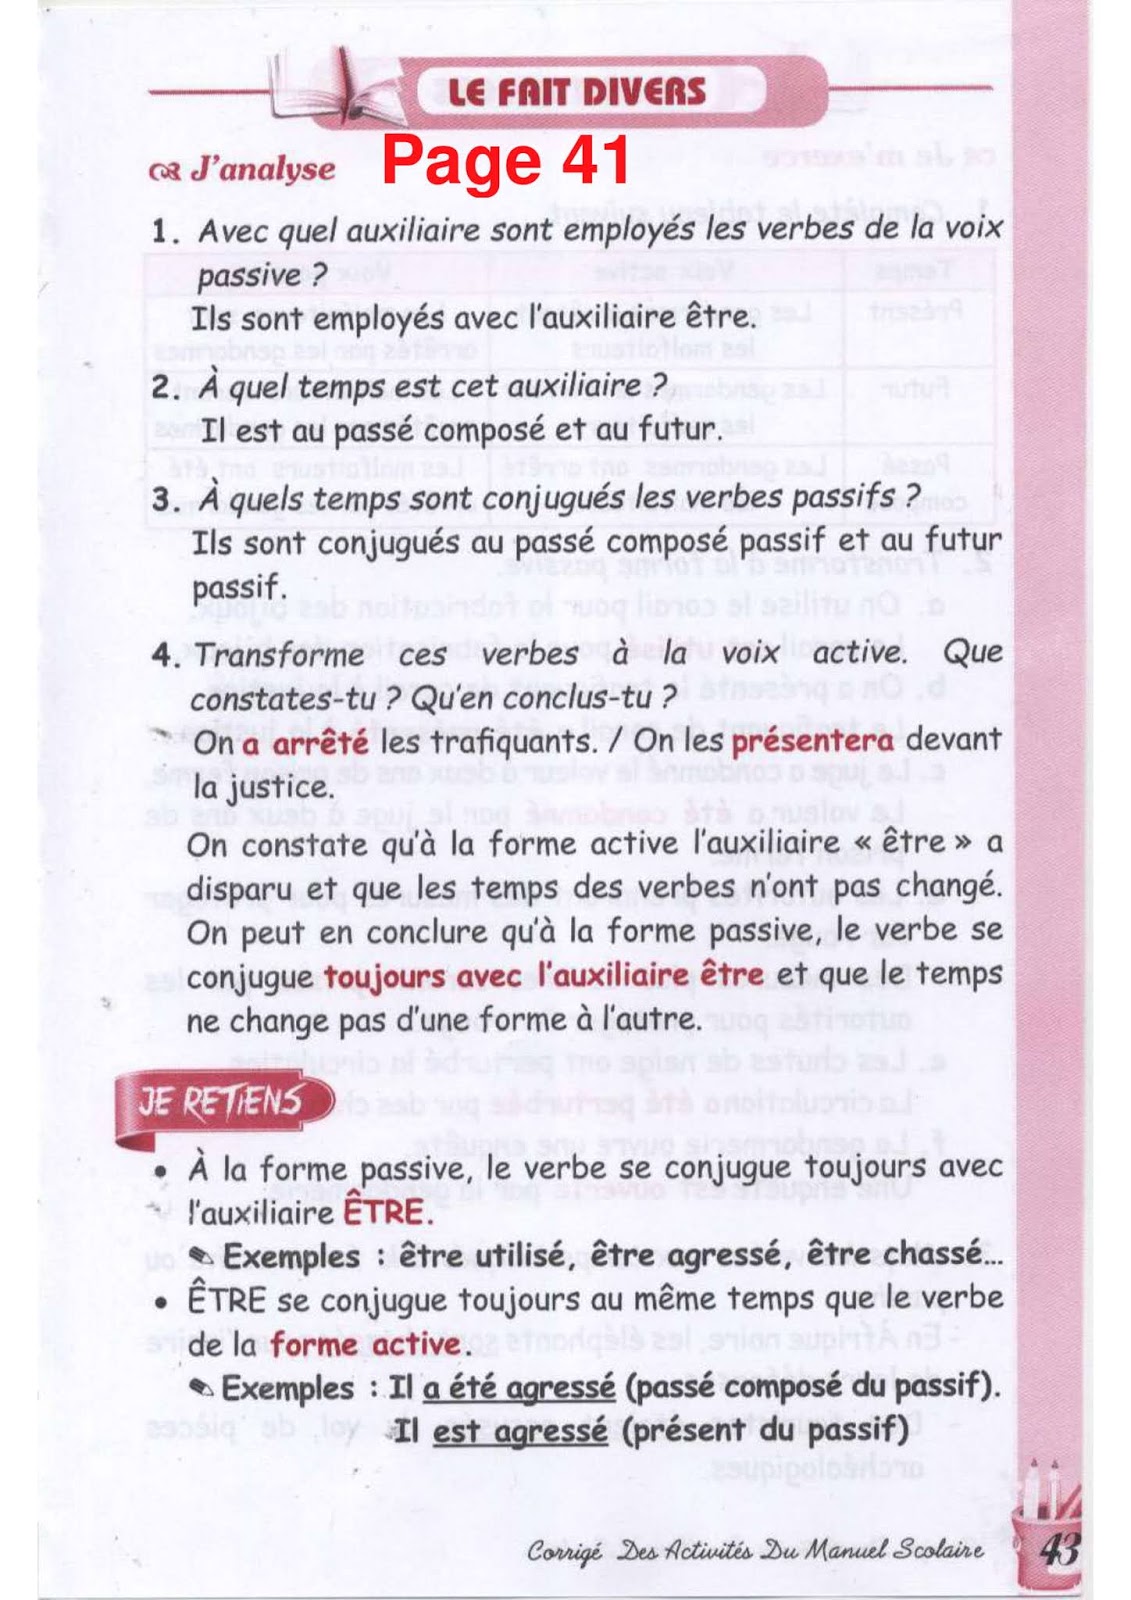 حل تمارين صفحة 41 الفرنسية للسنة الثالثة متوسط - الجيل الثاني